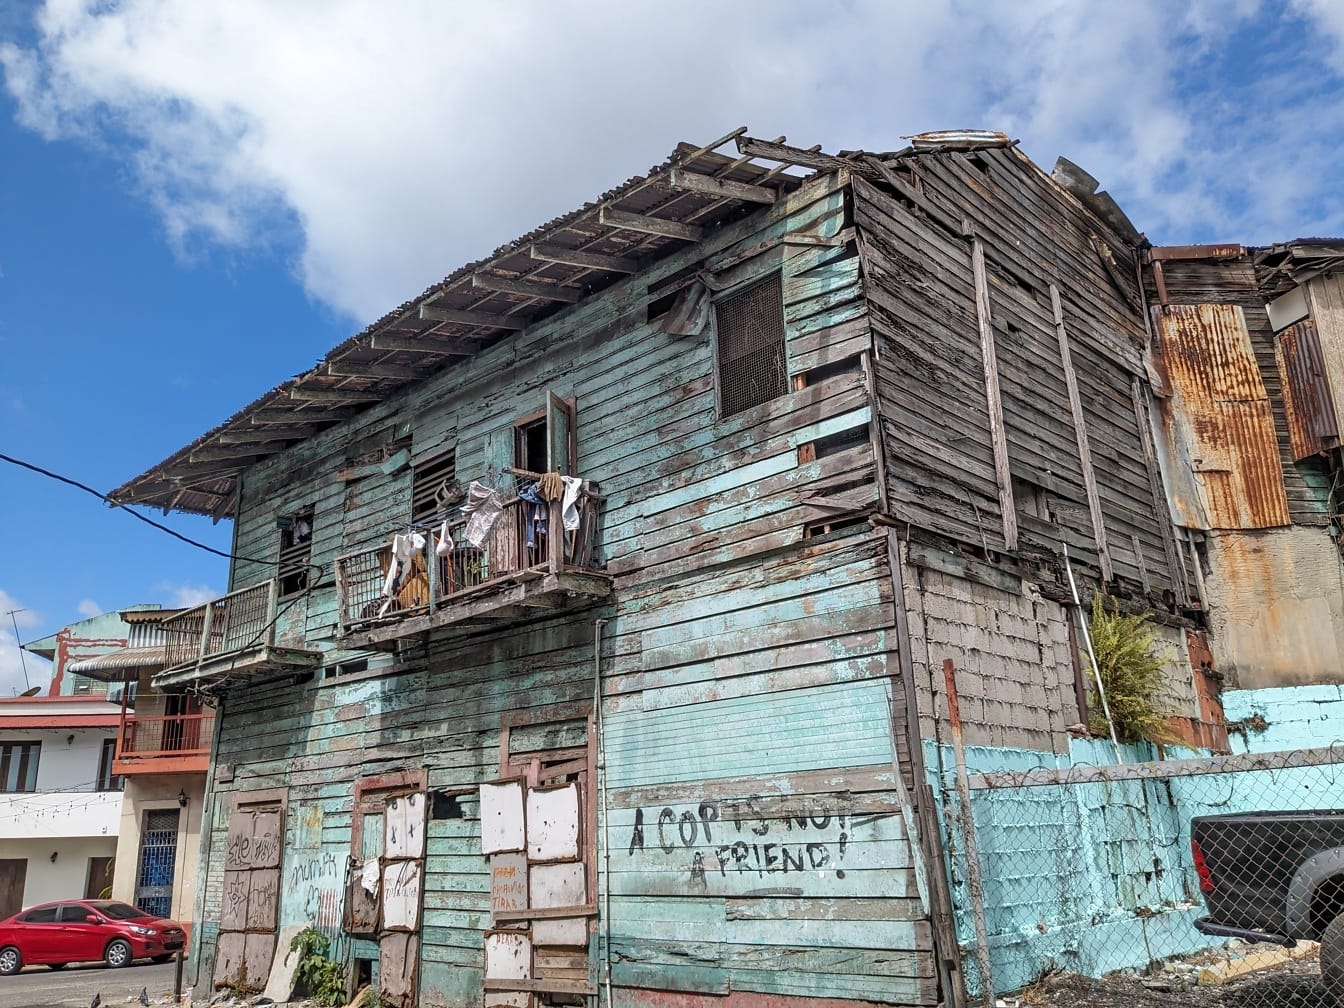 Vanha hylätty talo, jossa on graffitit kyljessä kaupungin köyhällä alueella